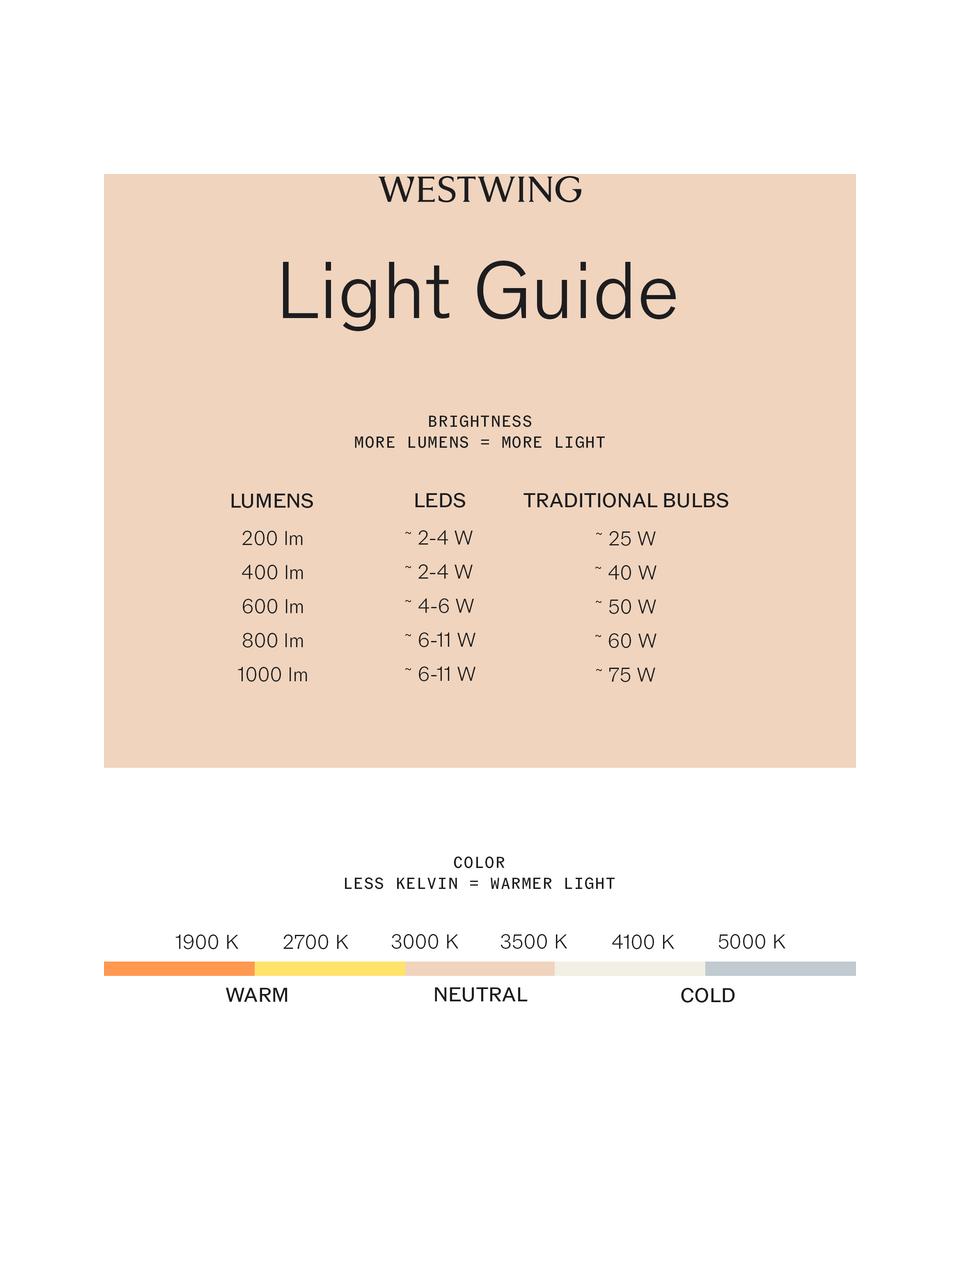 Kleine Dimmbare LED-Tischlampe To-Tie, Lampenschirm: Glas, Silberfarben, Transparent, Ø 21 x H 19 cm